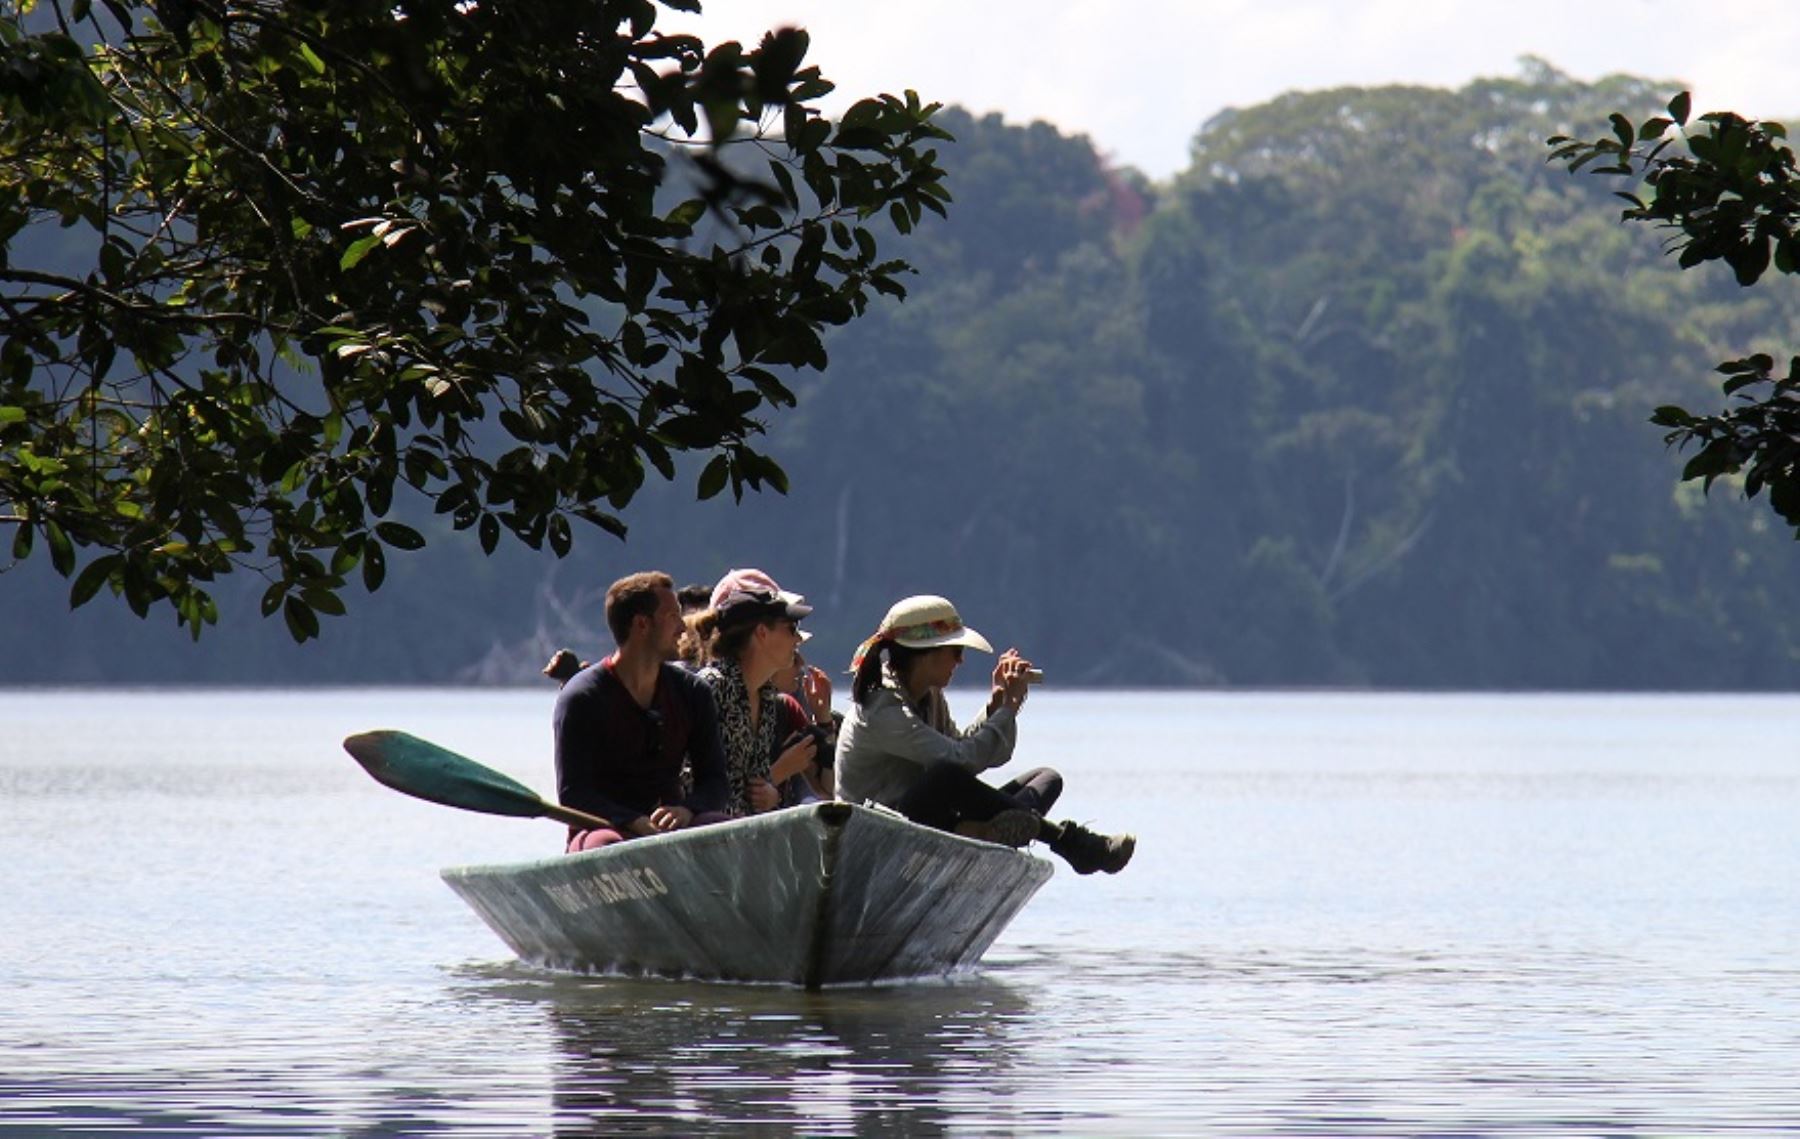 Mejoran servicios turísticos de Reserva Tambopata para diversificar oferta turística